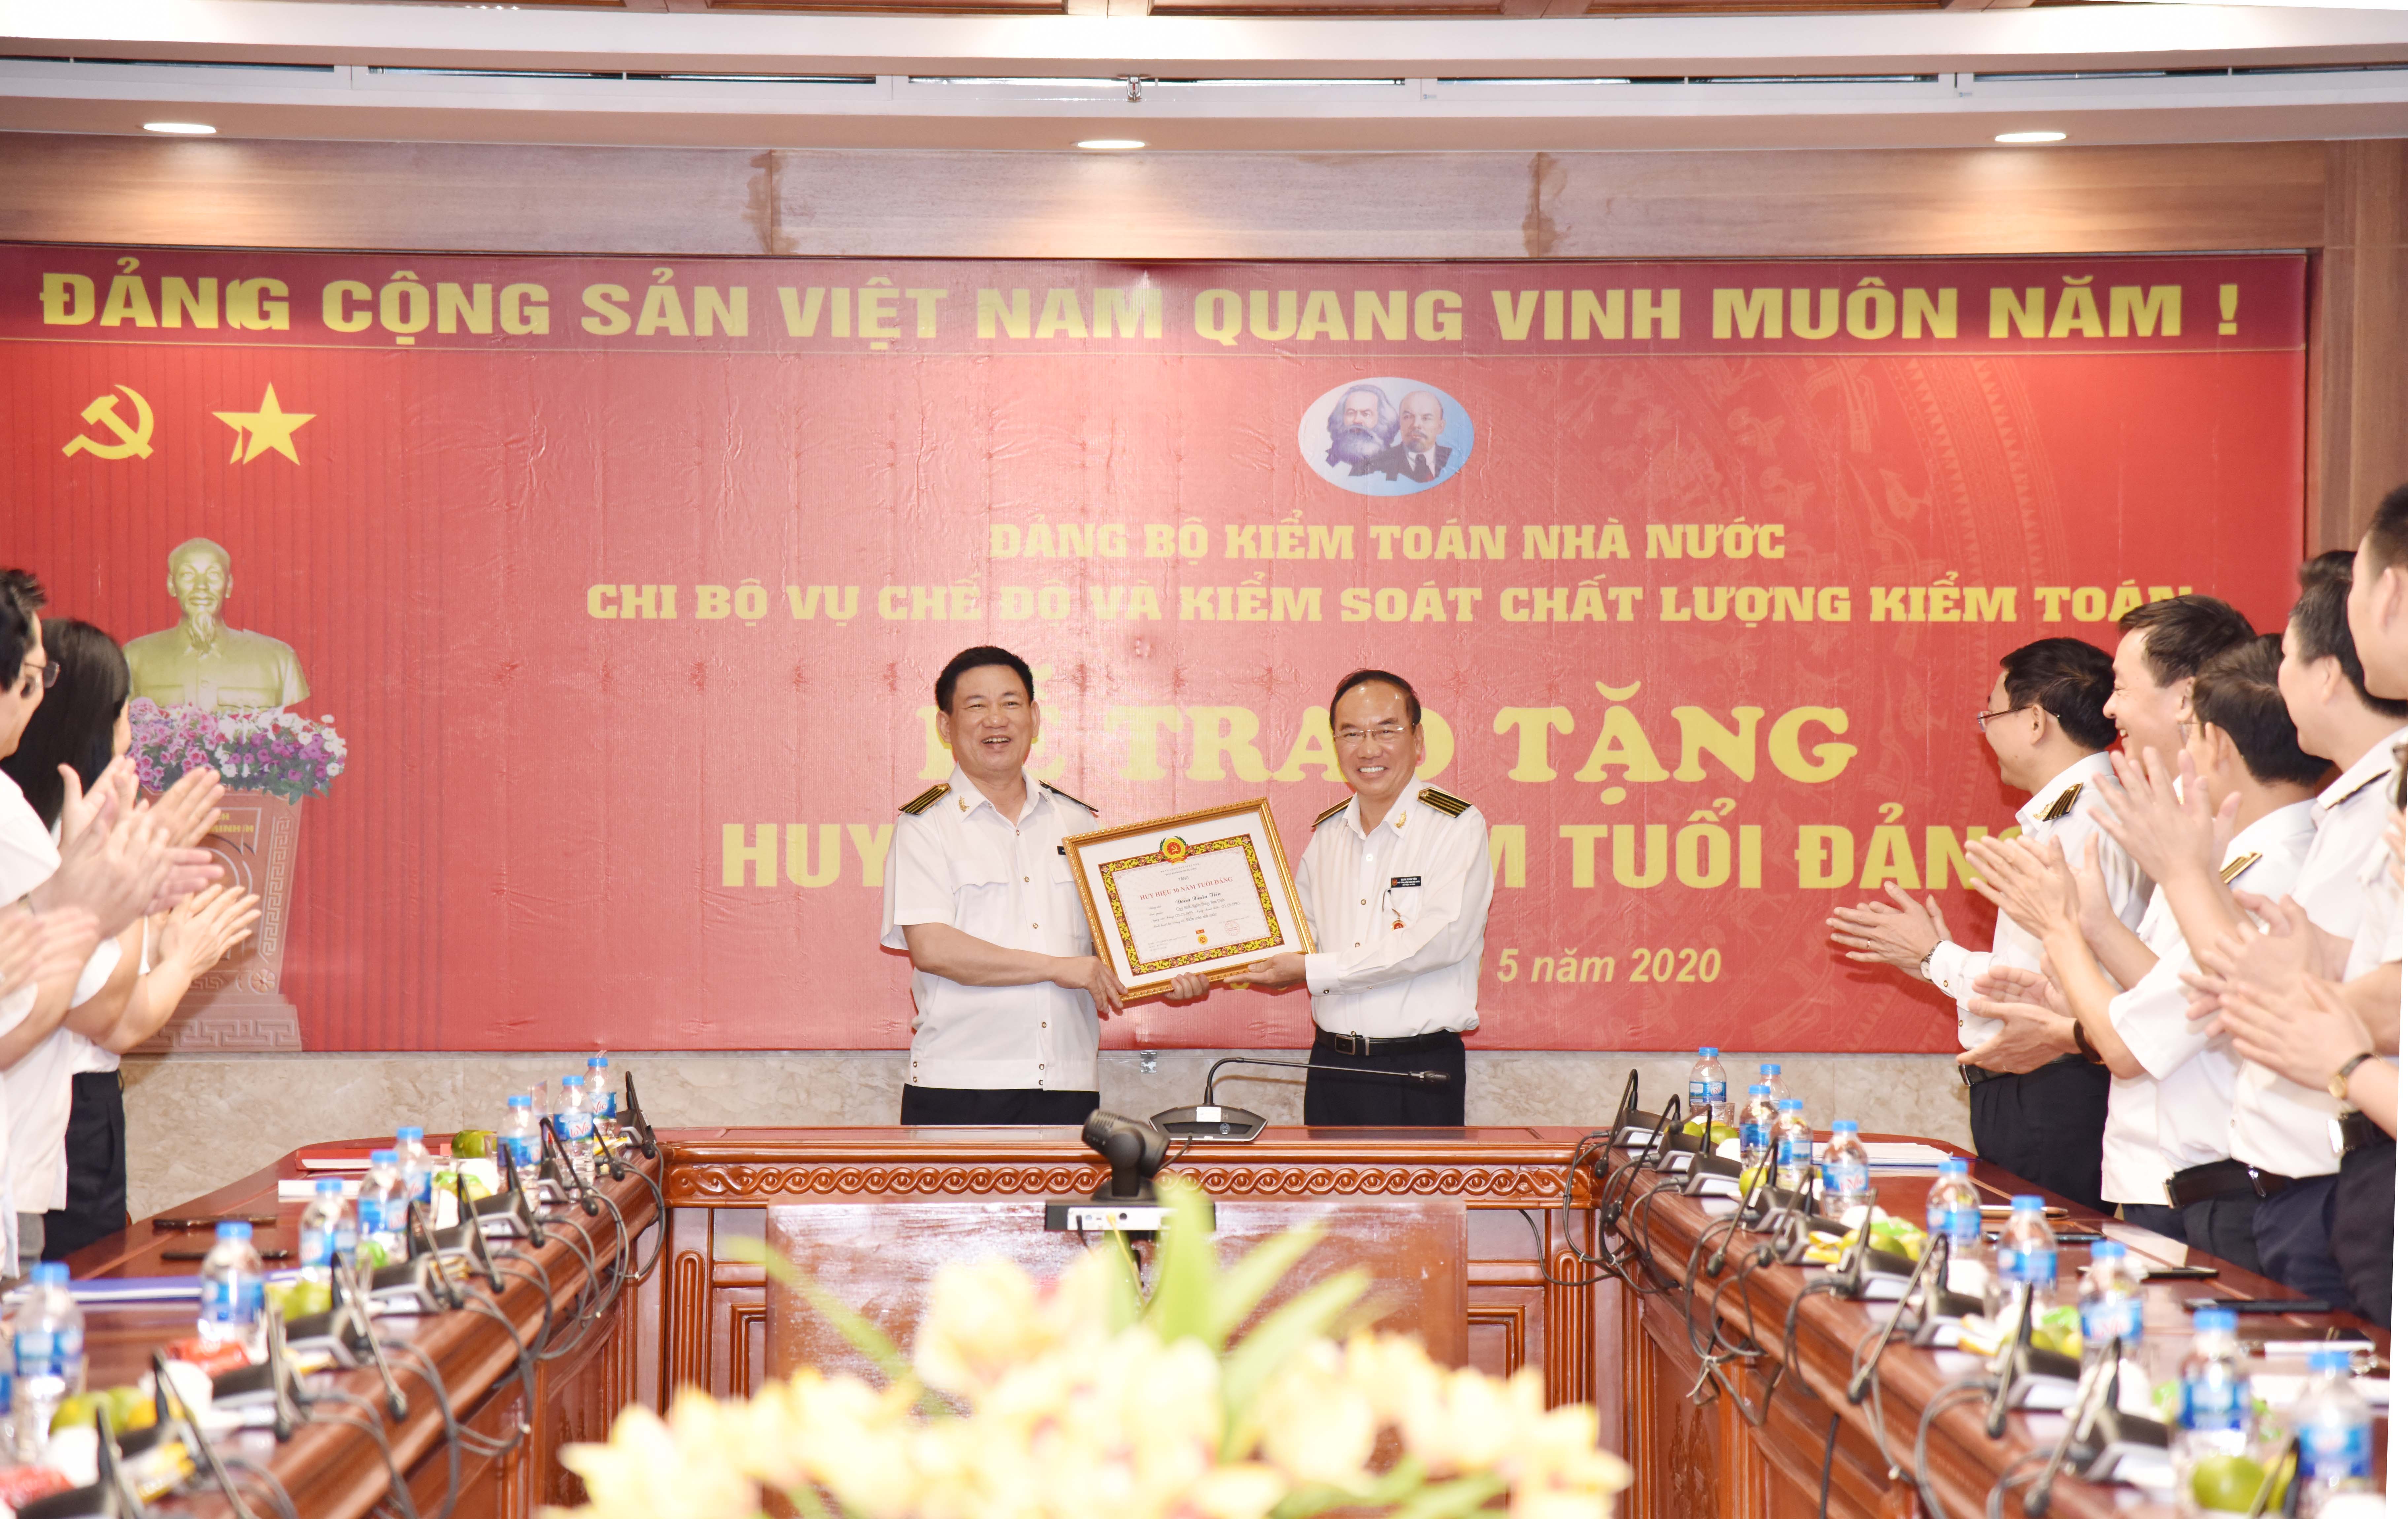 Trao tặng huy hiệu 30 năm tuổi Đảng cho Phó Tổng Kiểm toán Nhà nước Đoàn Xuân Tiên